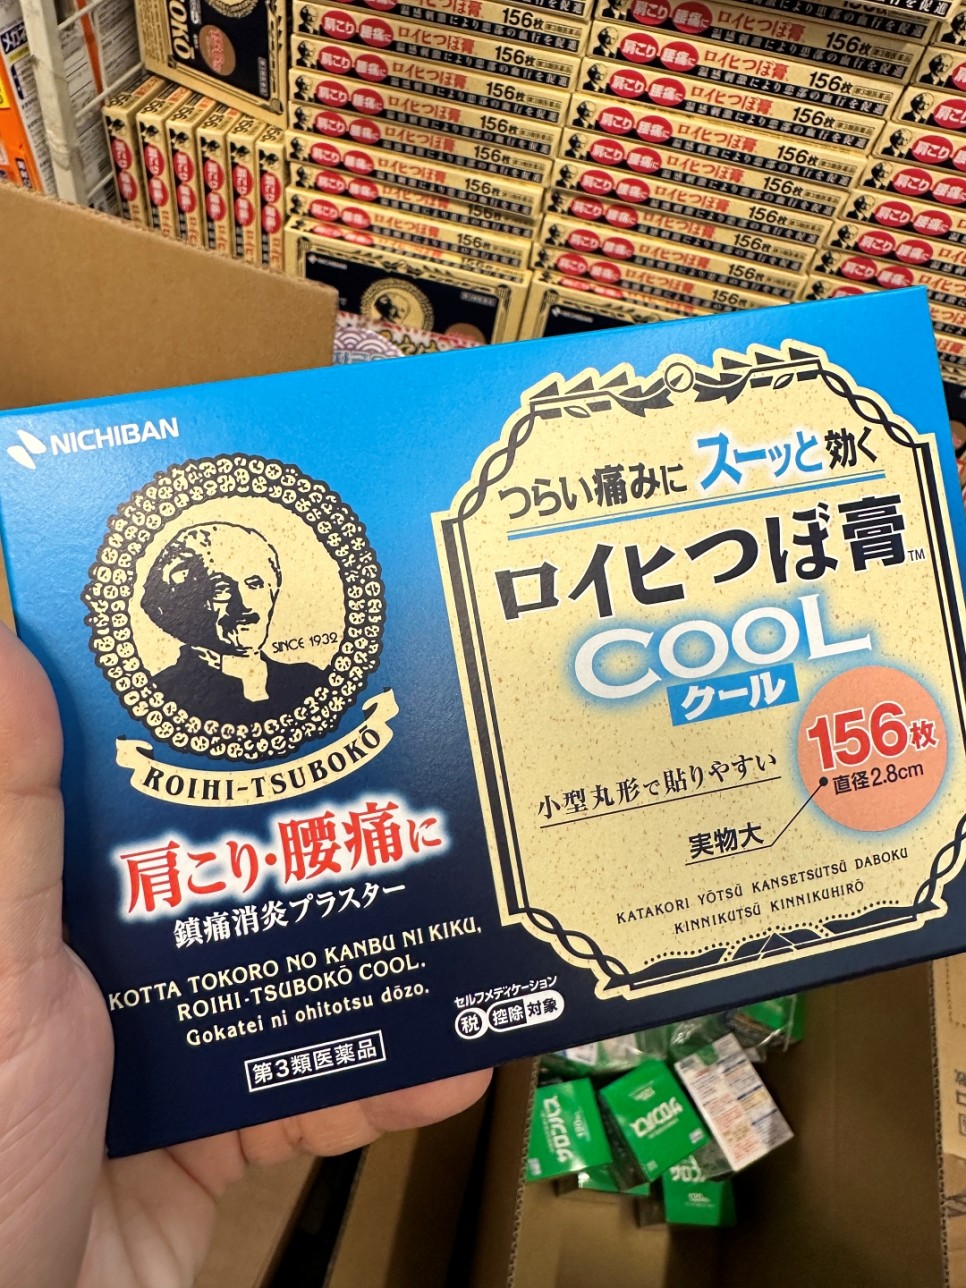 일본 유심 추천 속도 굿 일본여행 준비물 유심칩 구매 후기 할인